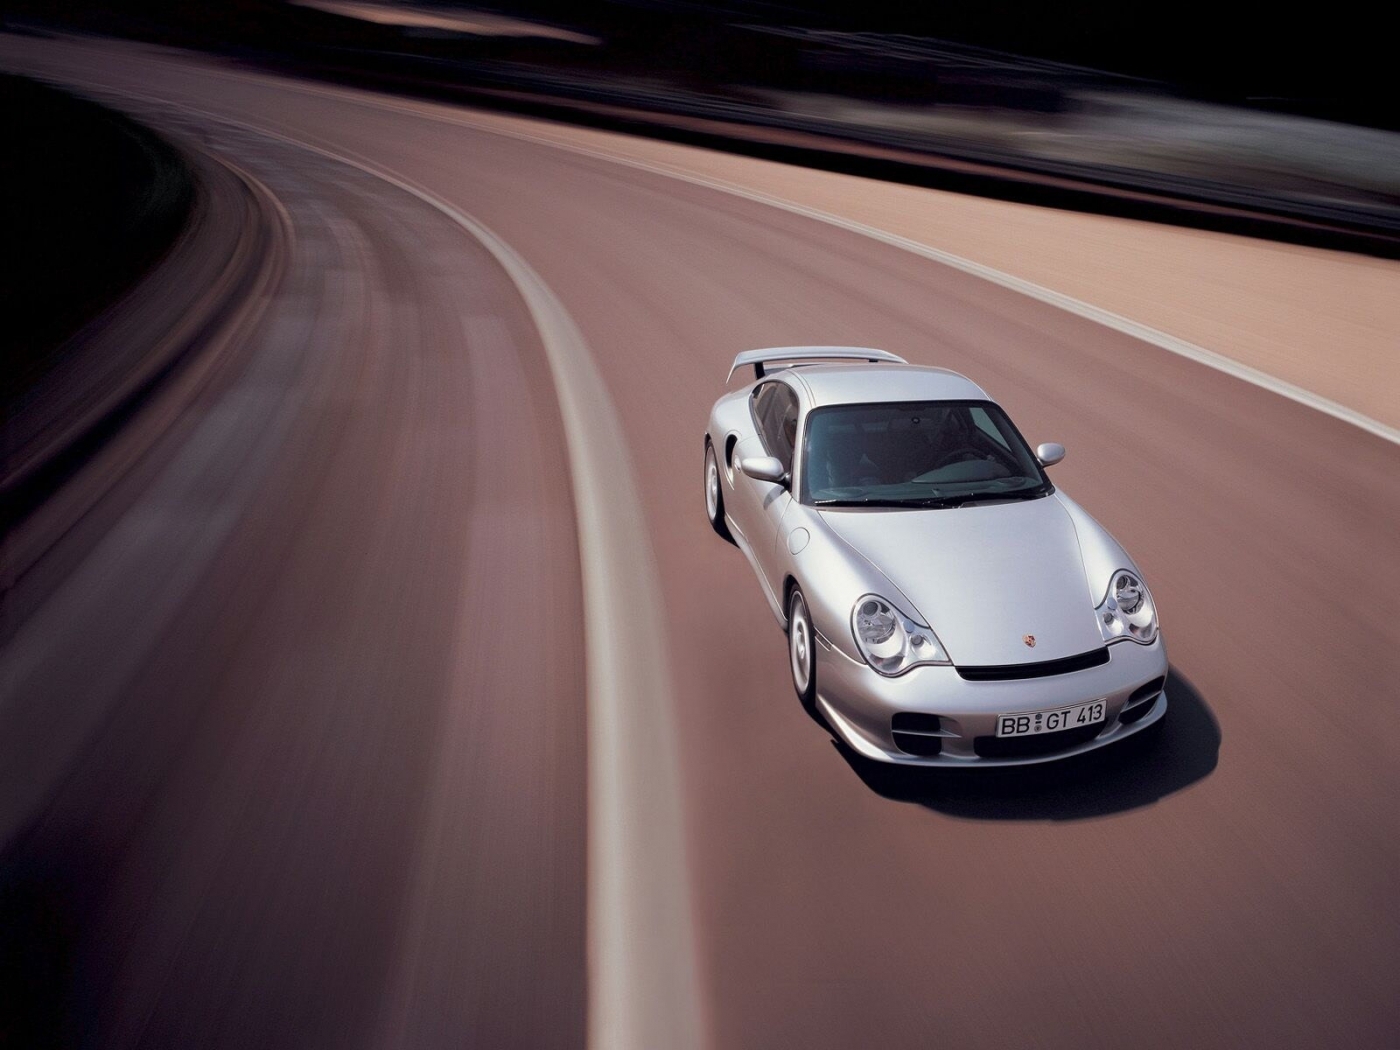 Скачать картинку Транспорт, Машины, Порш (Porsche) в телефон бесплатно.